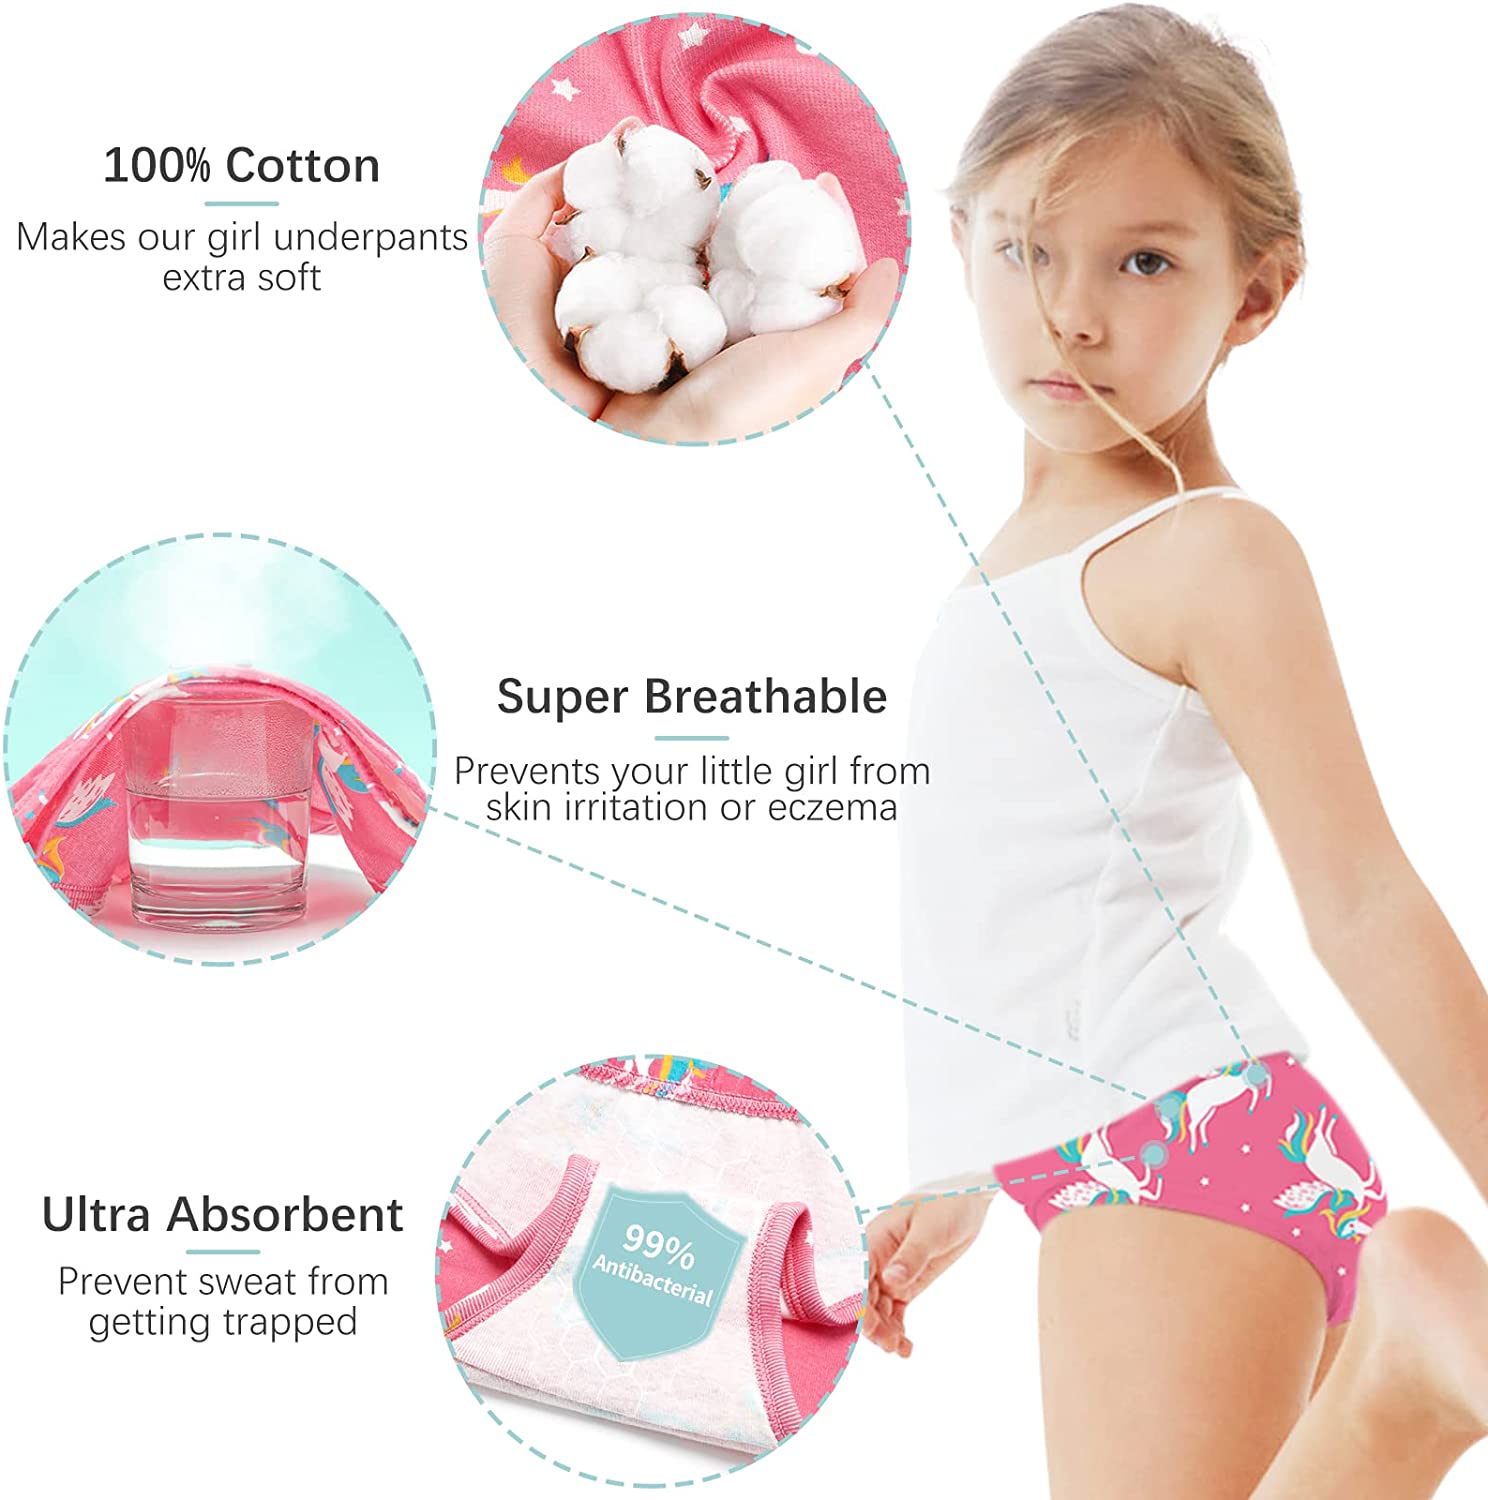  SYNPOS Girls Underwear 100% Cotton Underwear For Girls  Breathable Comfort Panty Briefs Toddler Undies